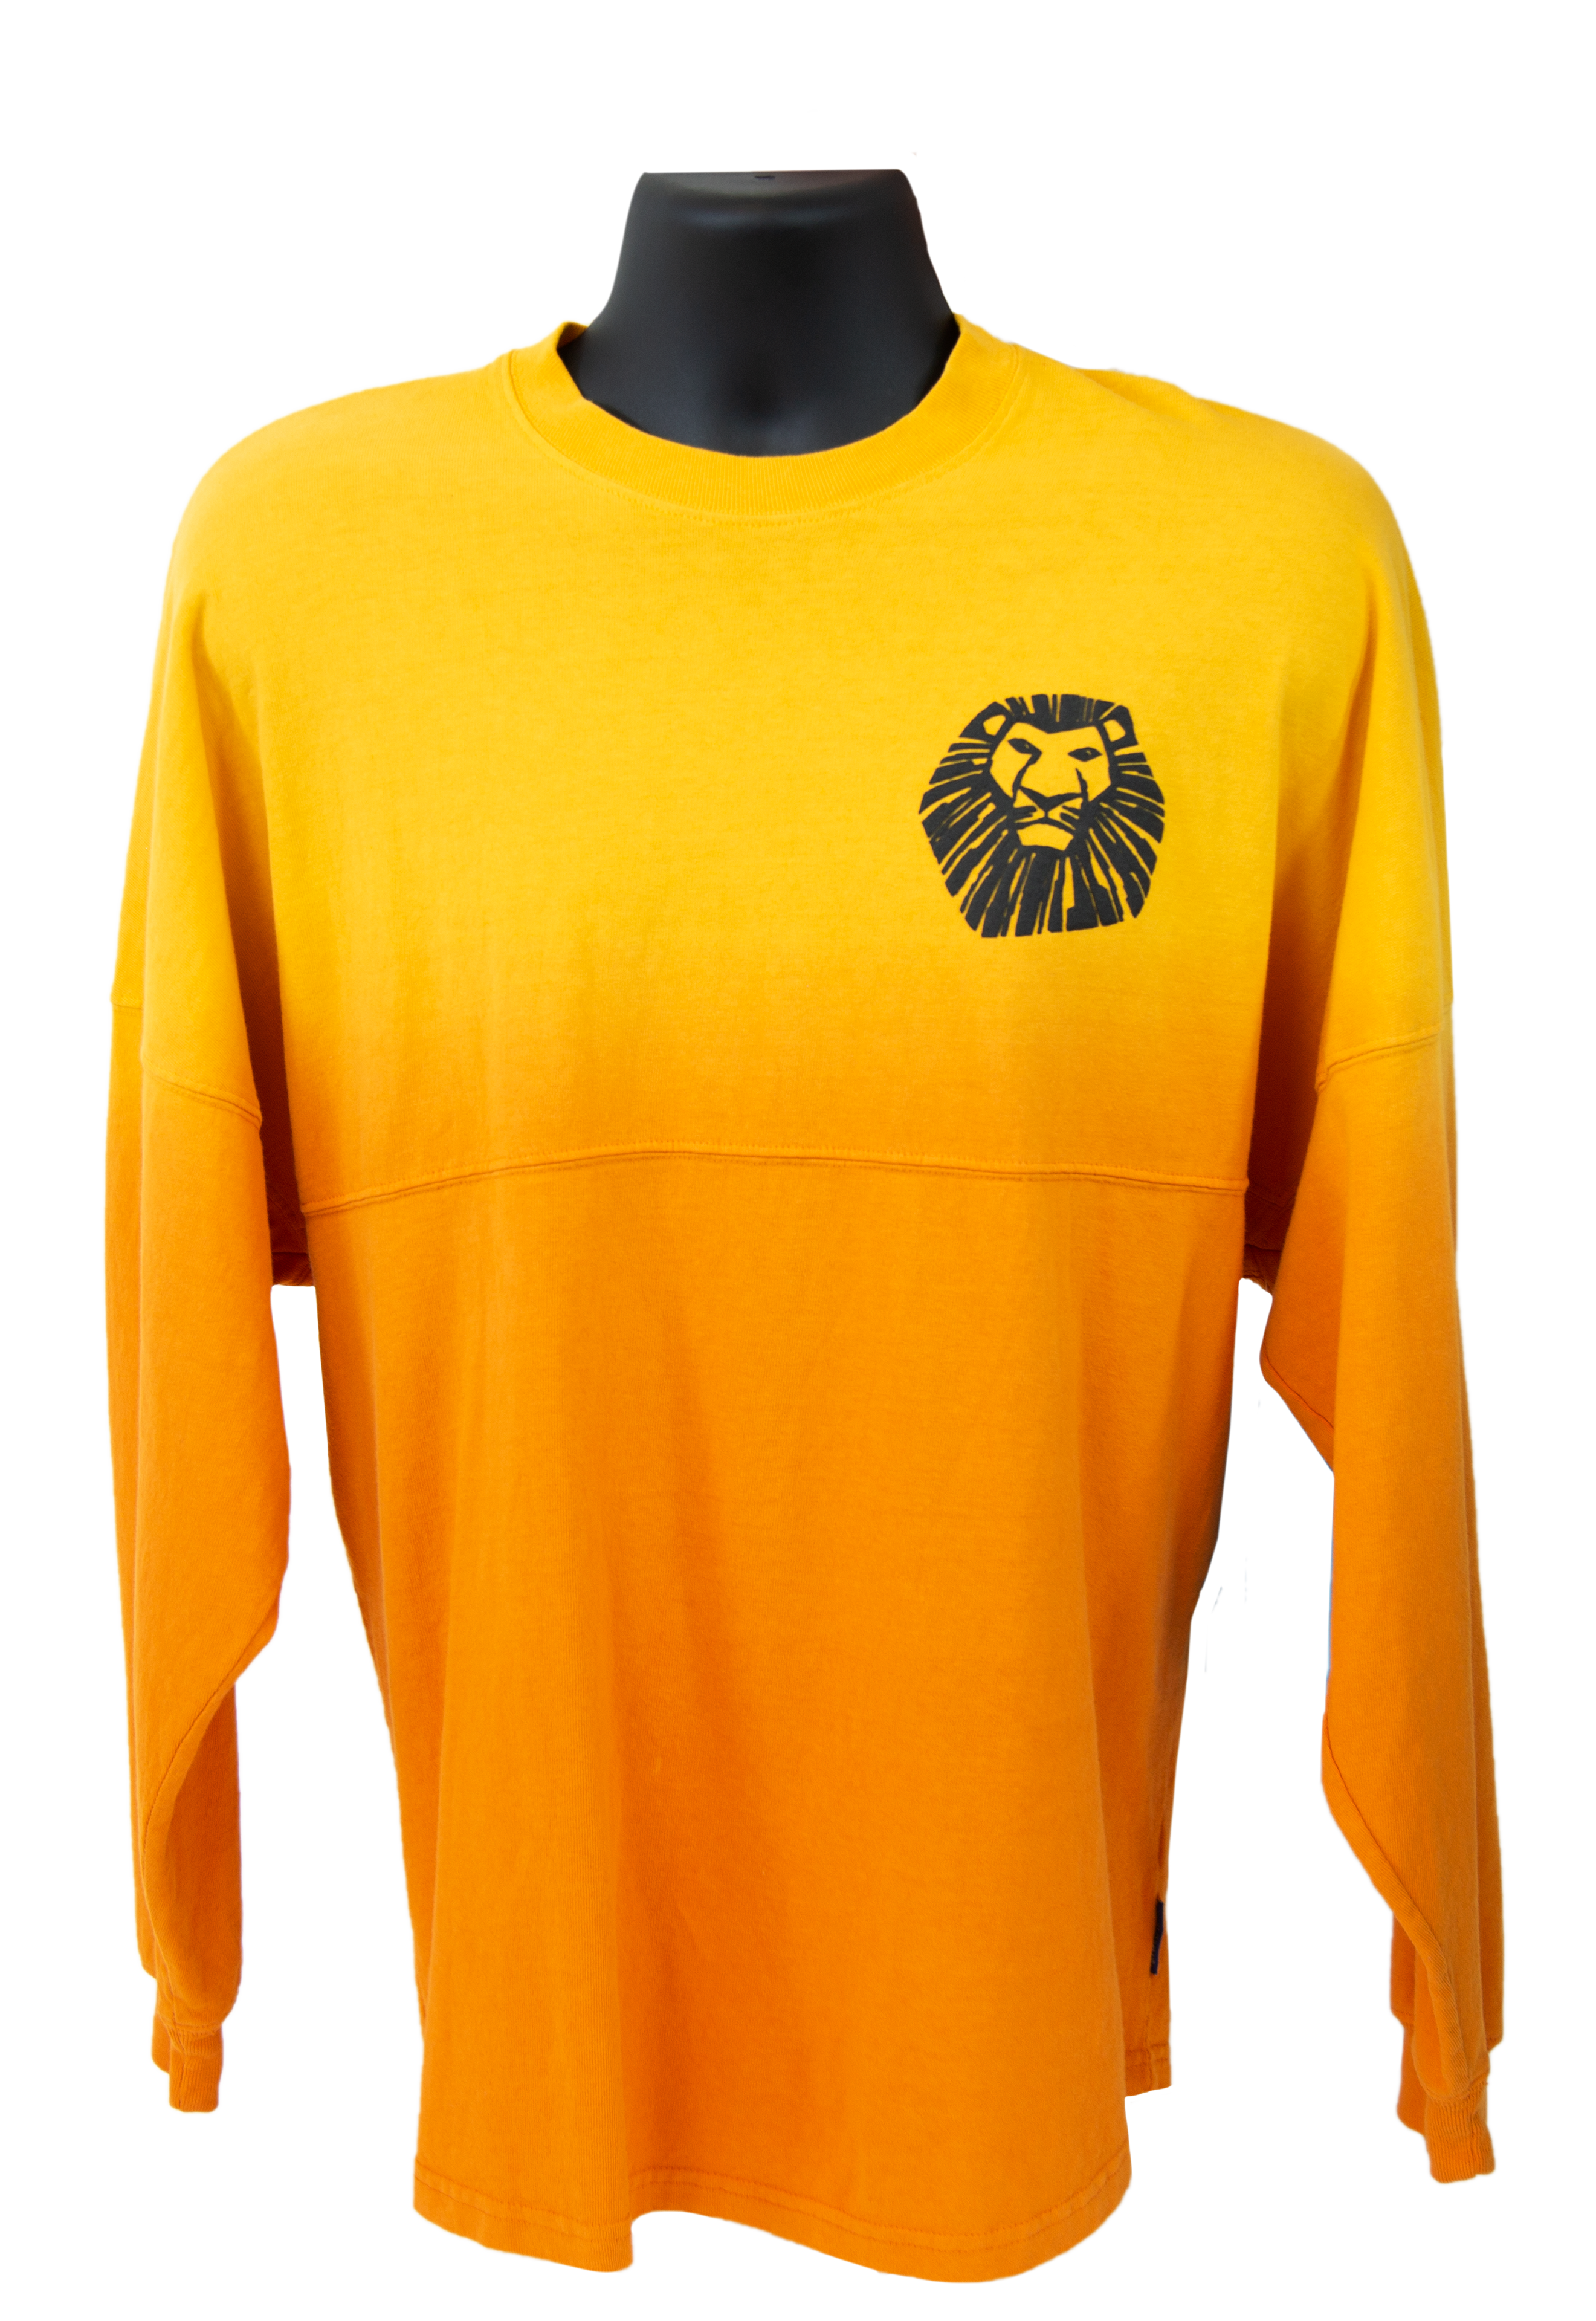 lion king spirit jersey